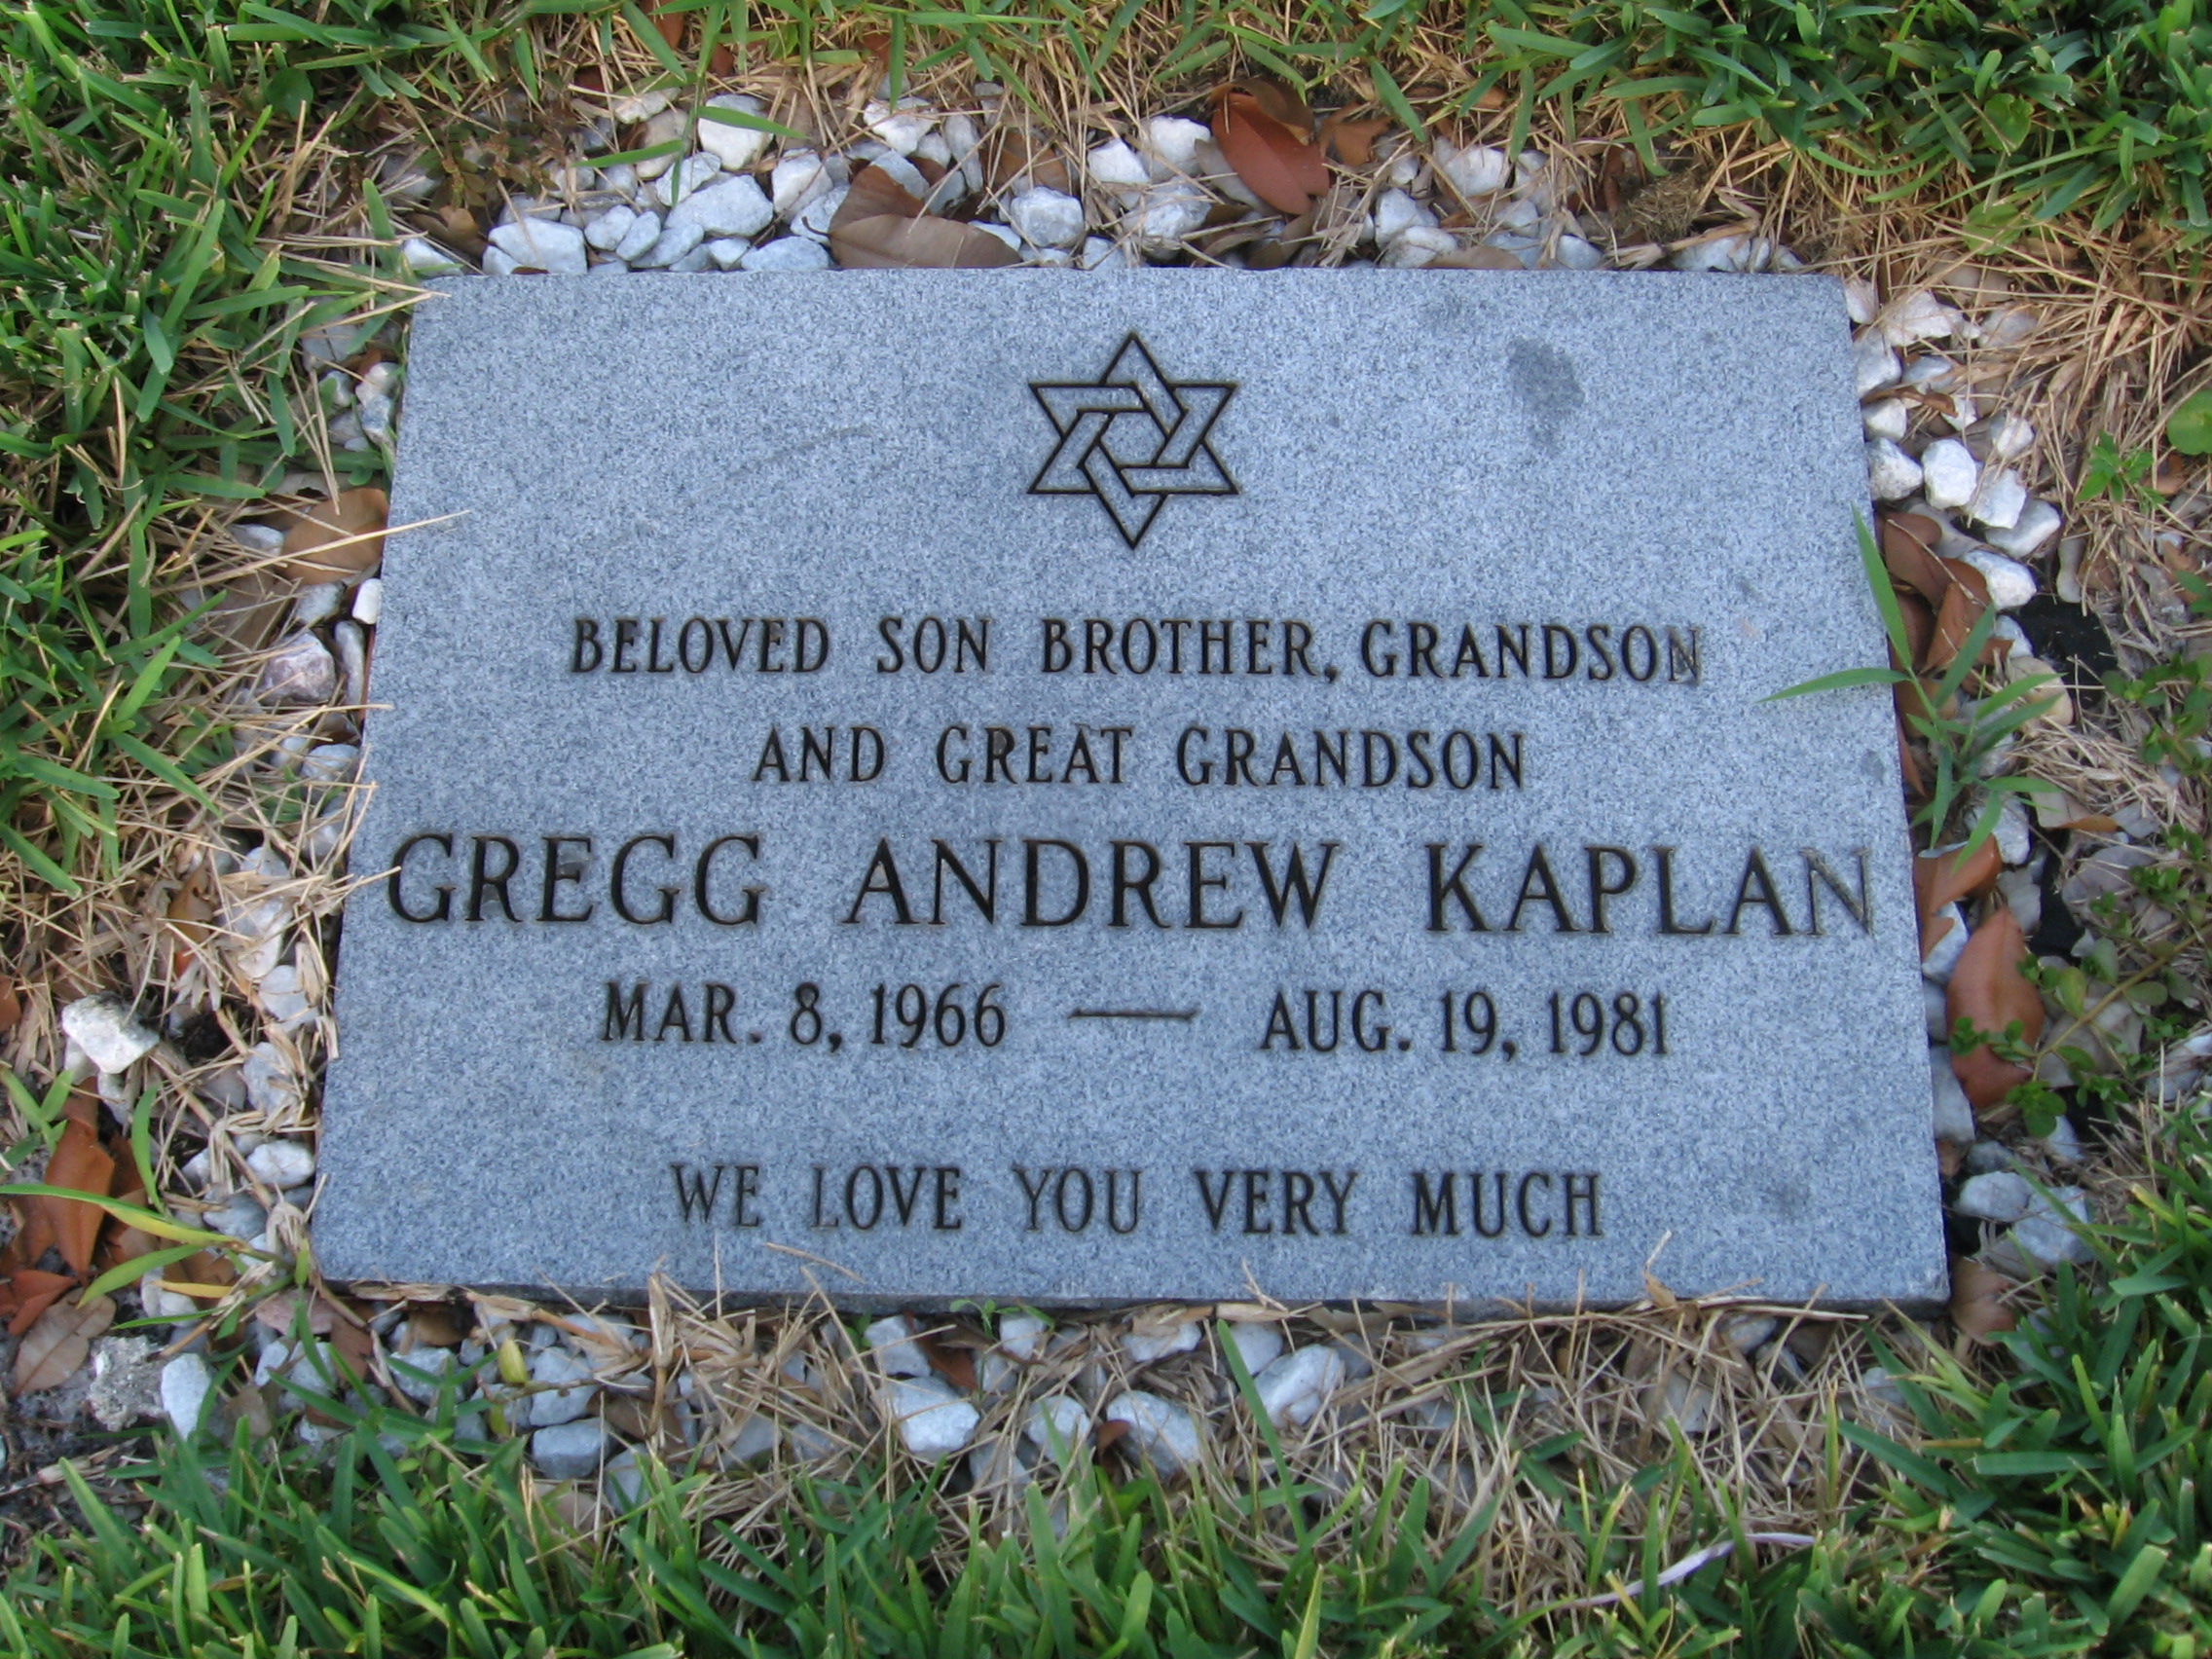 Gregg Andrew Kaplan